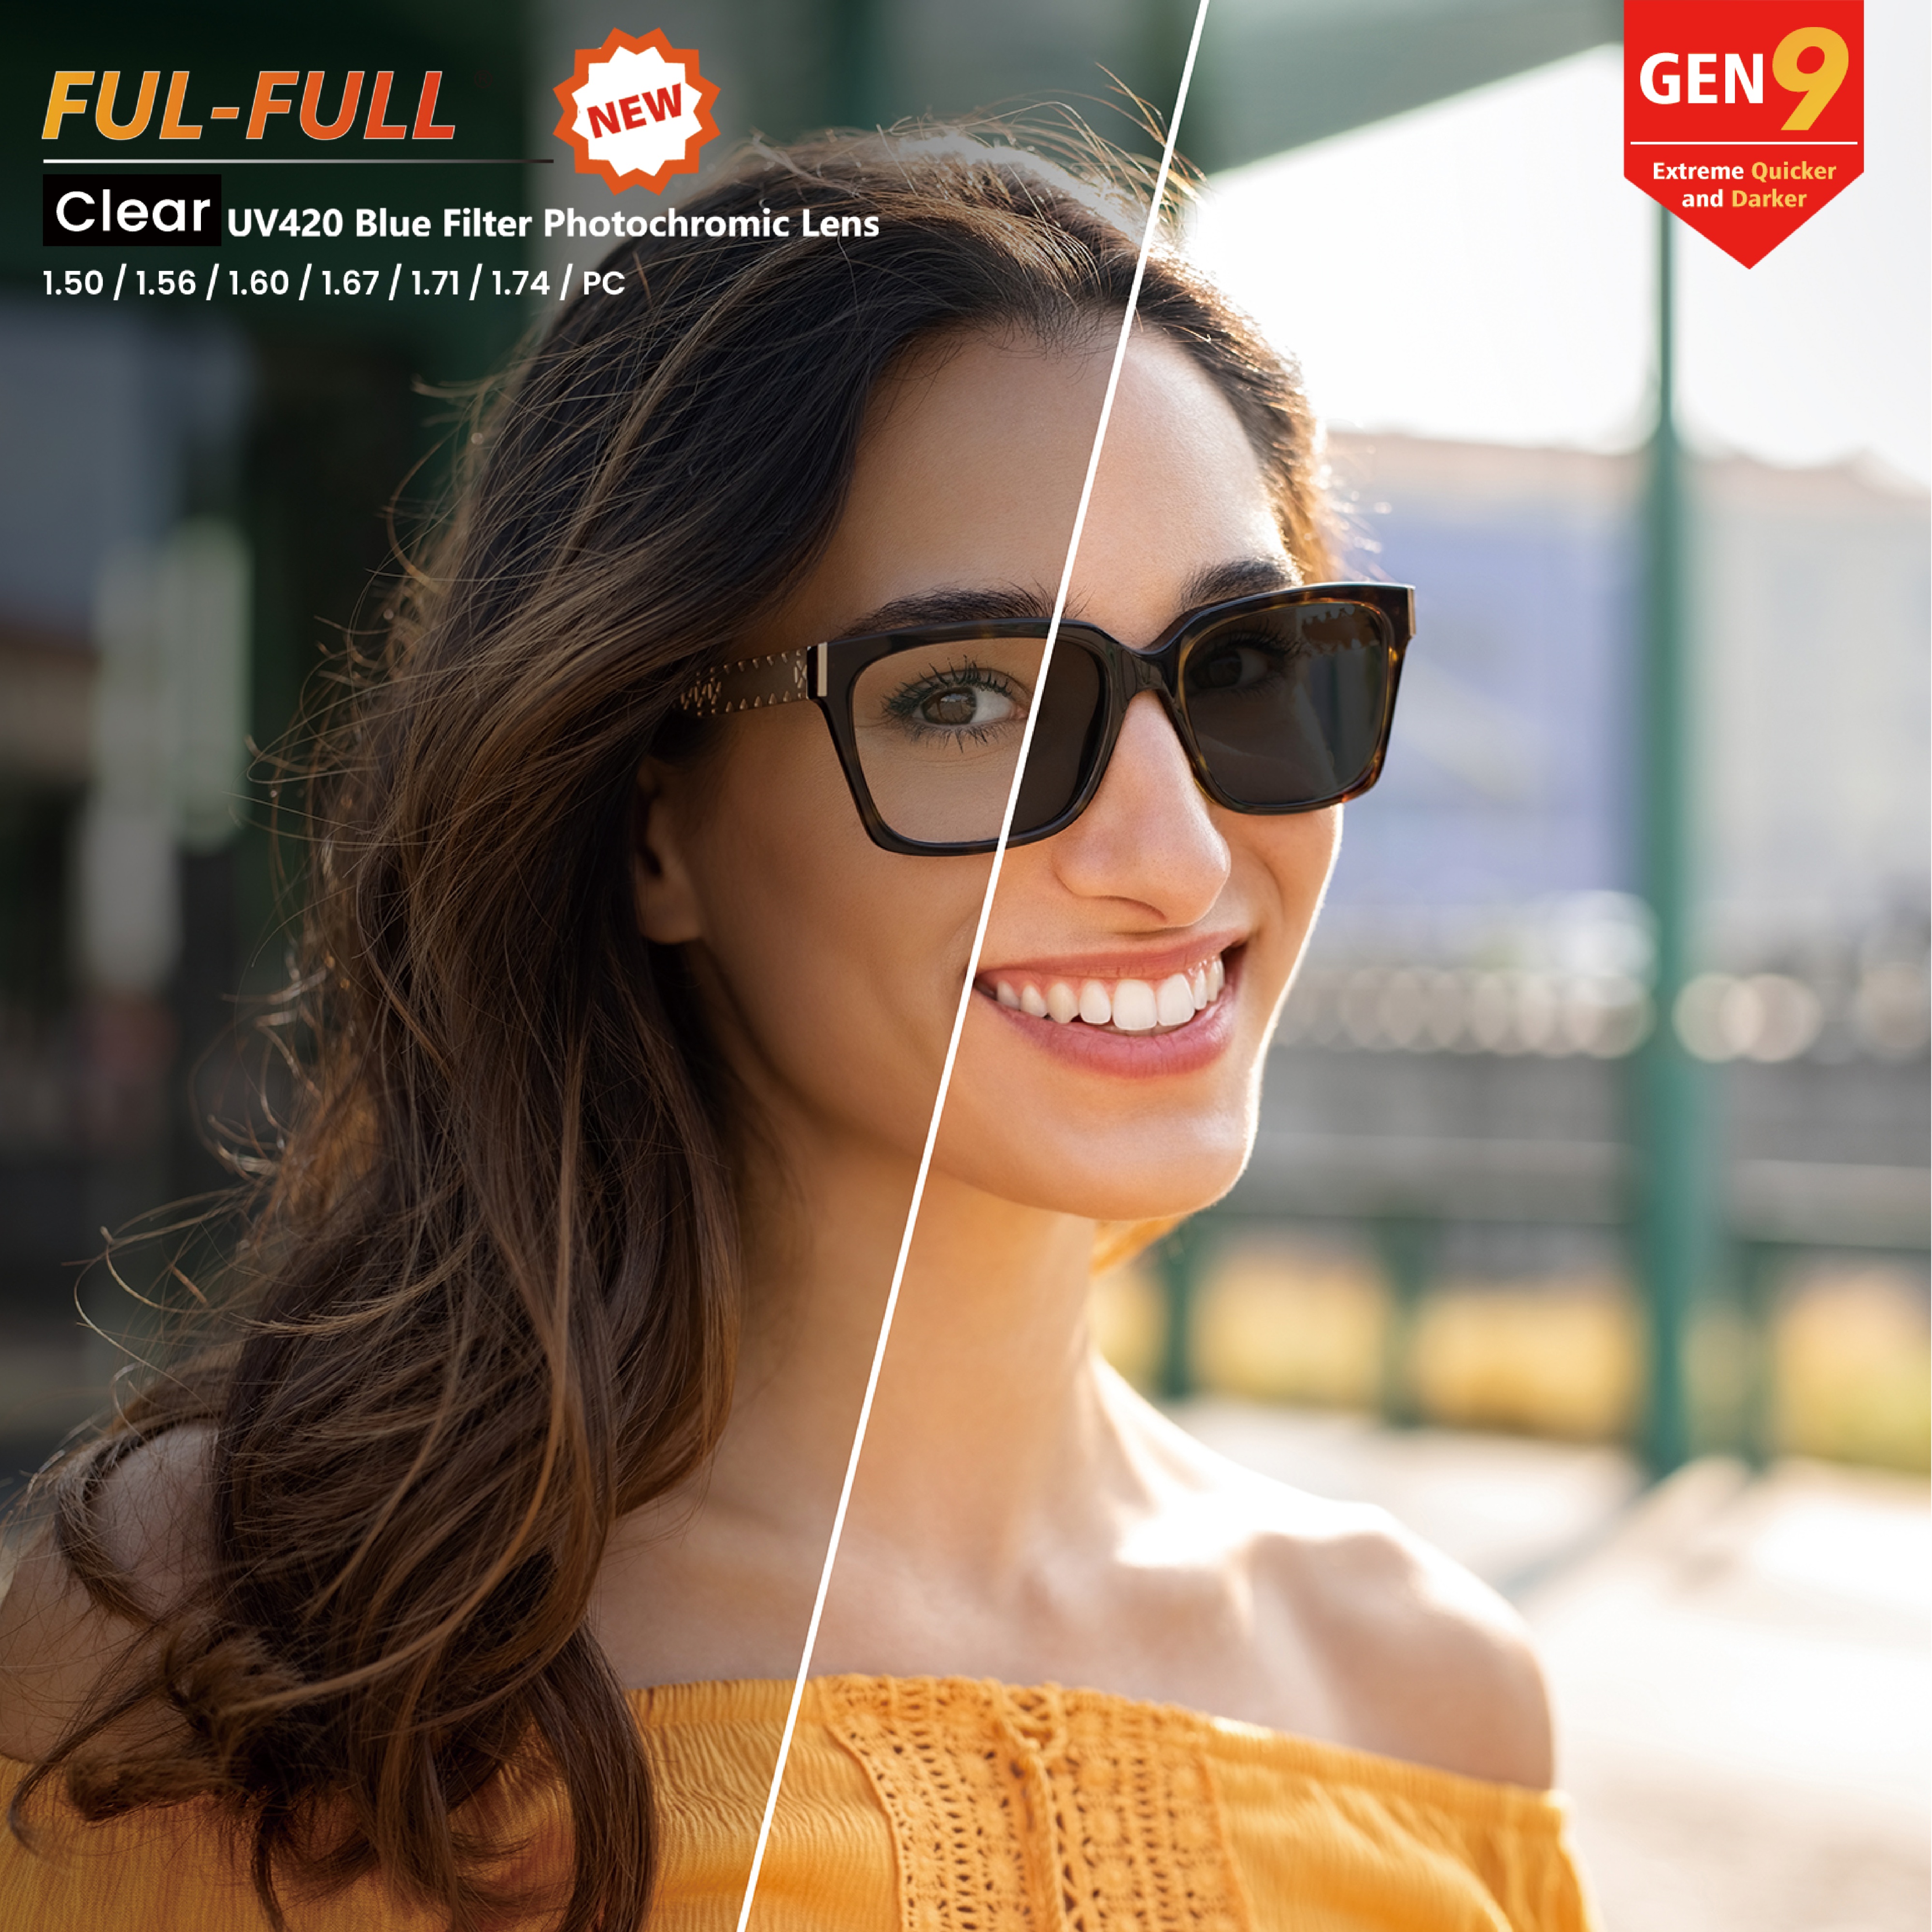 FUL-FULL UV420 Spin Photochromic Lenses